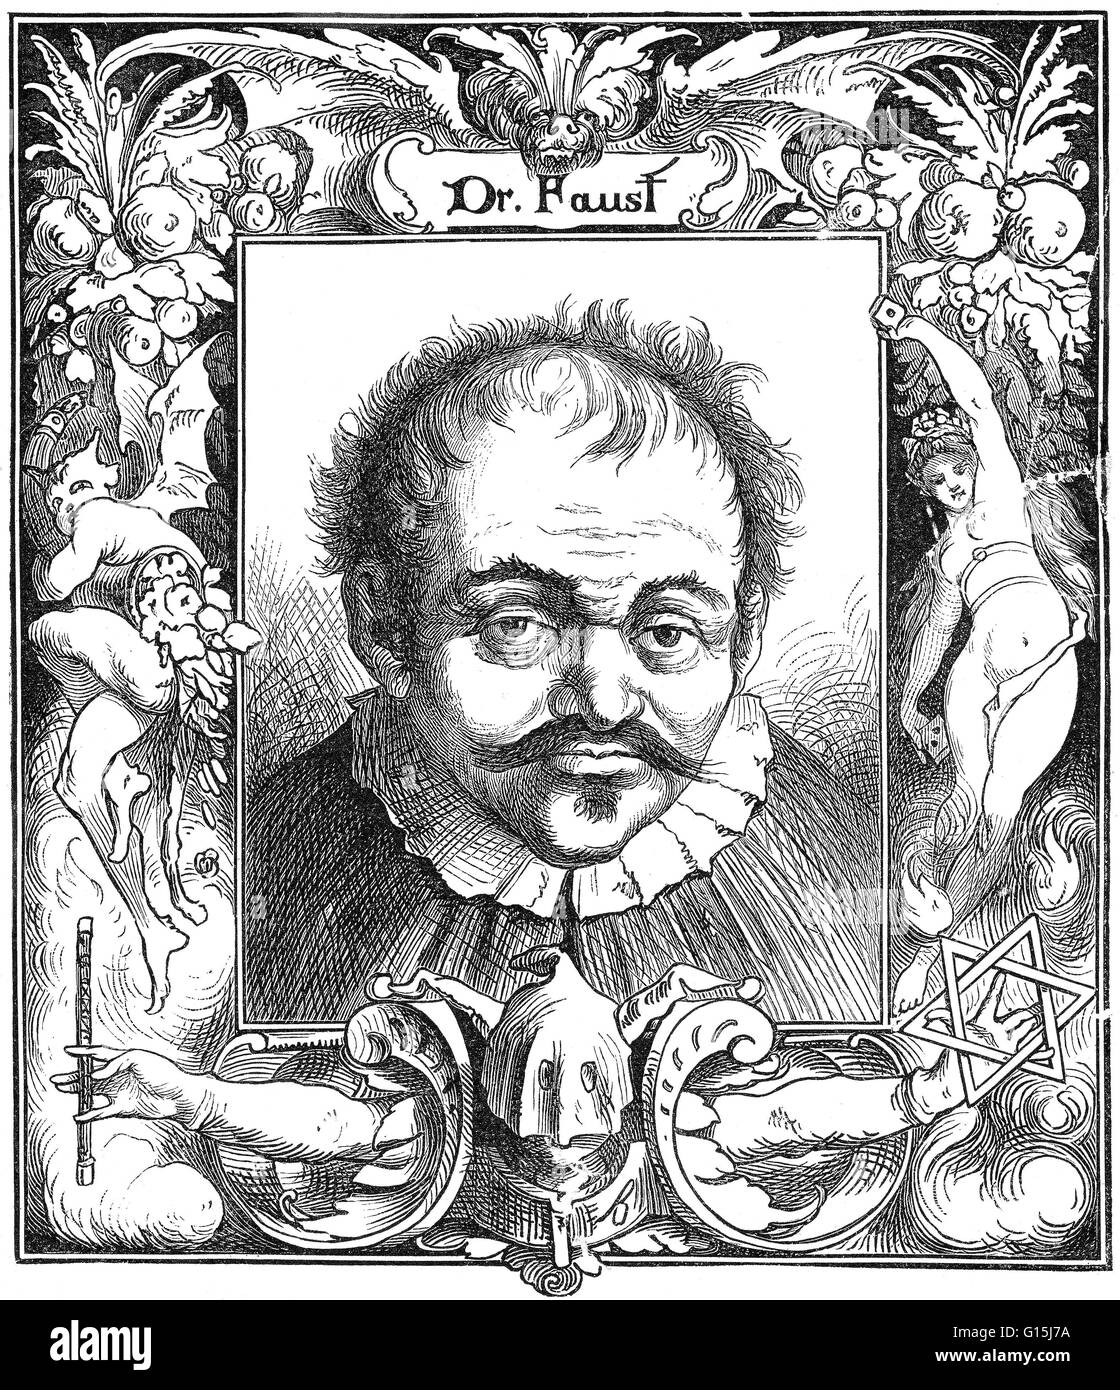 Doktor Johann Georg Faust (1480-1540), auch bekannt als John Faustus, war ein wandernder Alchemist, Astrologe und Magier der deutschen Renaissance. Sein Leben wurde der Kern der Volkserzählung von Doktor Faust aus der 1580s, insbesondere ihren Höhepunkt in Chris Stockfoto